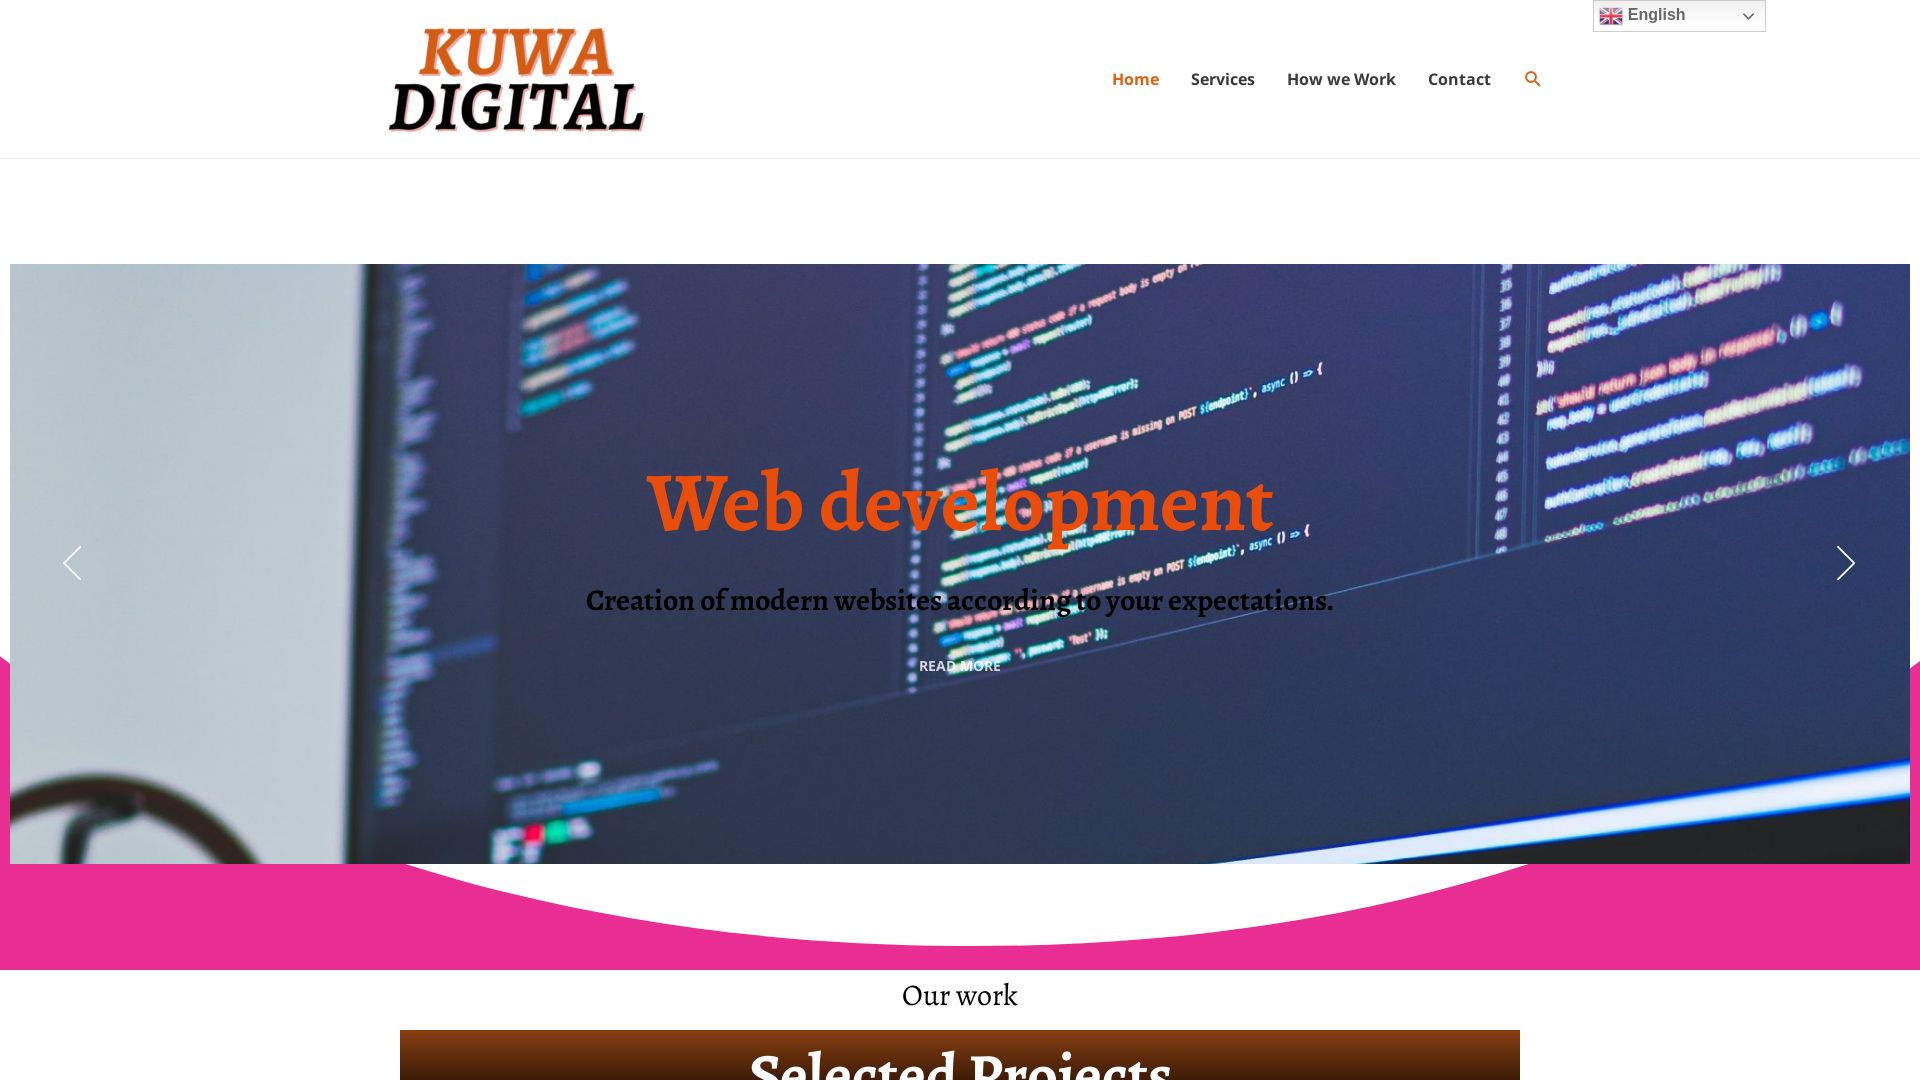 Website status kuwadigital.com is   ONLINE